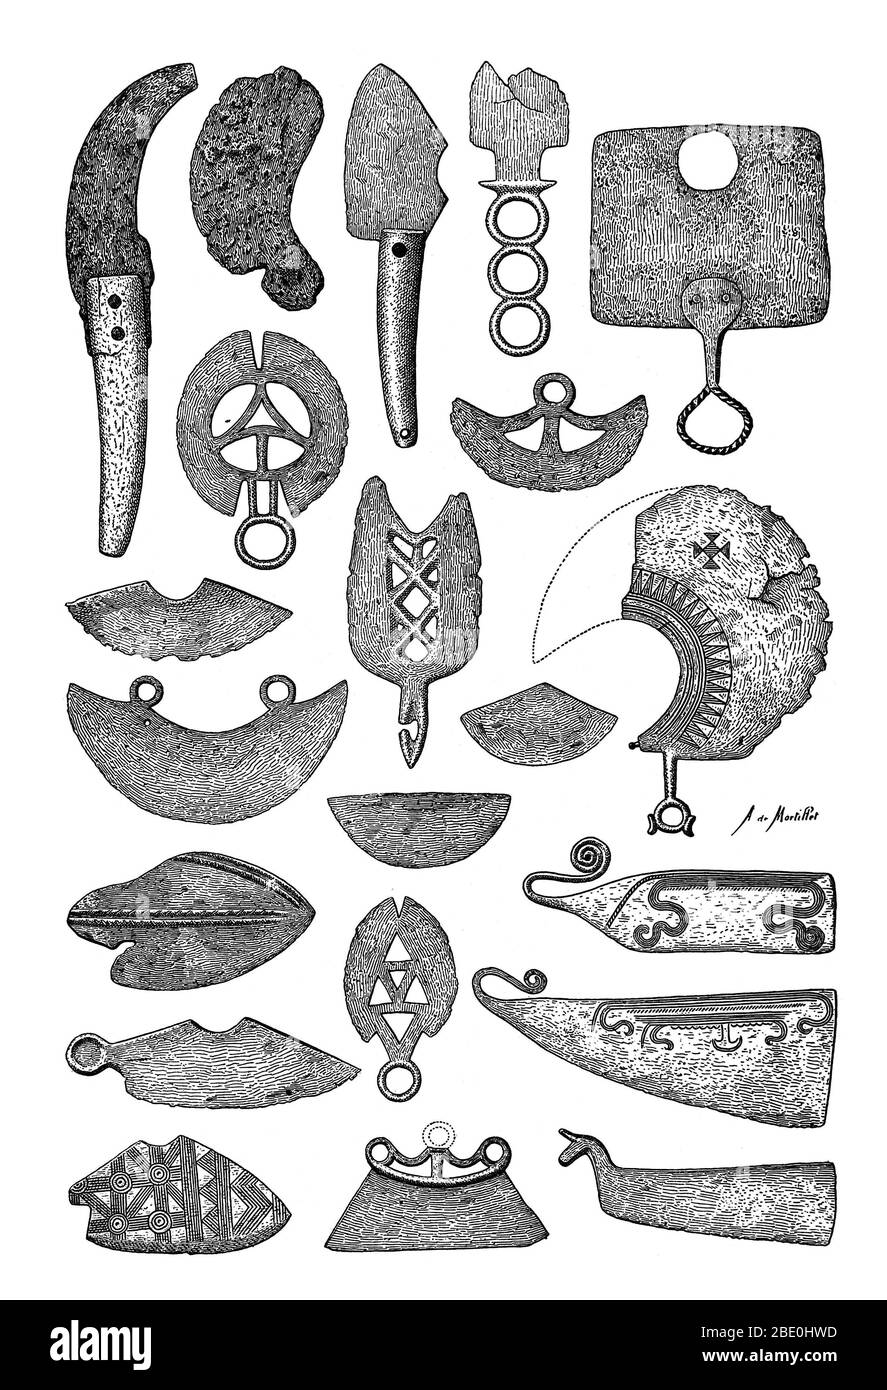 Ilustración de las afeitadoras prehistóricas de bronce. El objeto más antiguo parecido a una navaja ha sido fechado en 18,000 A.C. Foto de stock